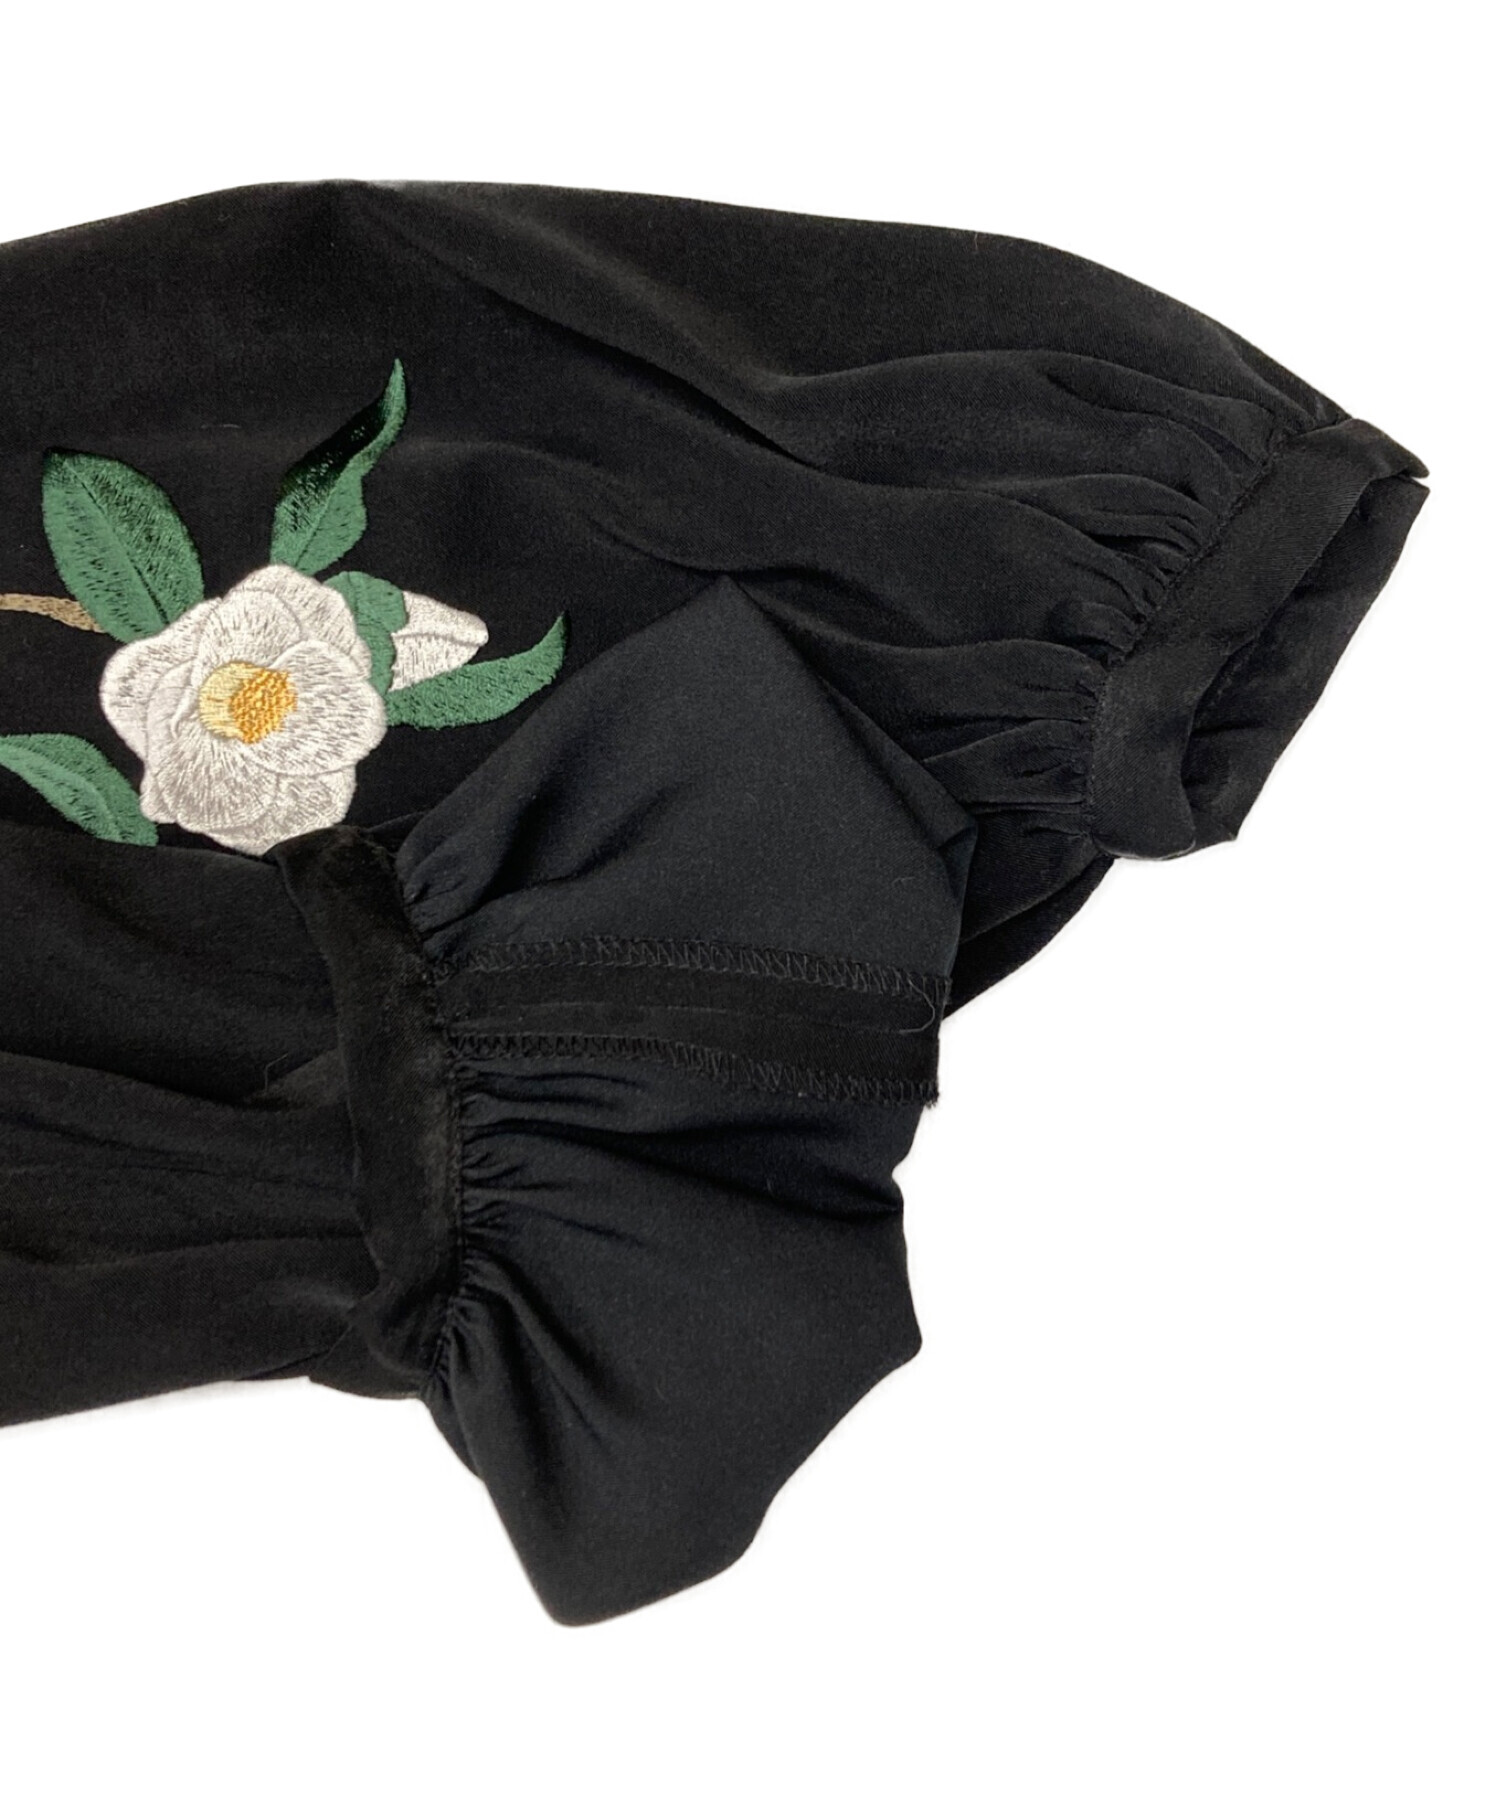 iCONOLOGY (イコノロジー) 花を着るワンピース白椿 ブラック サイズ:2